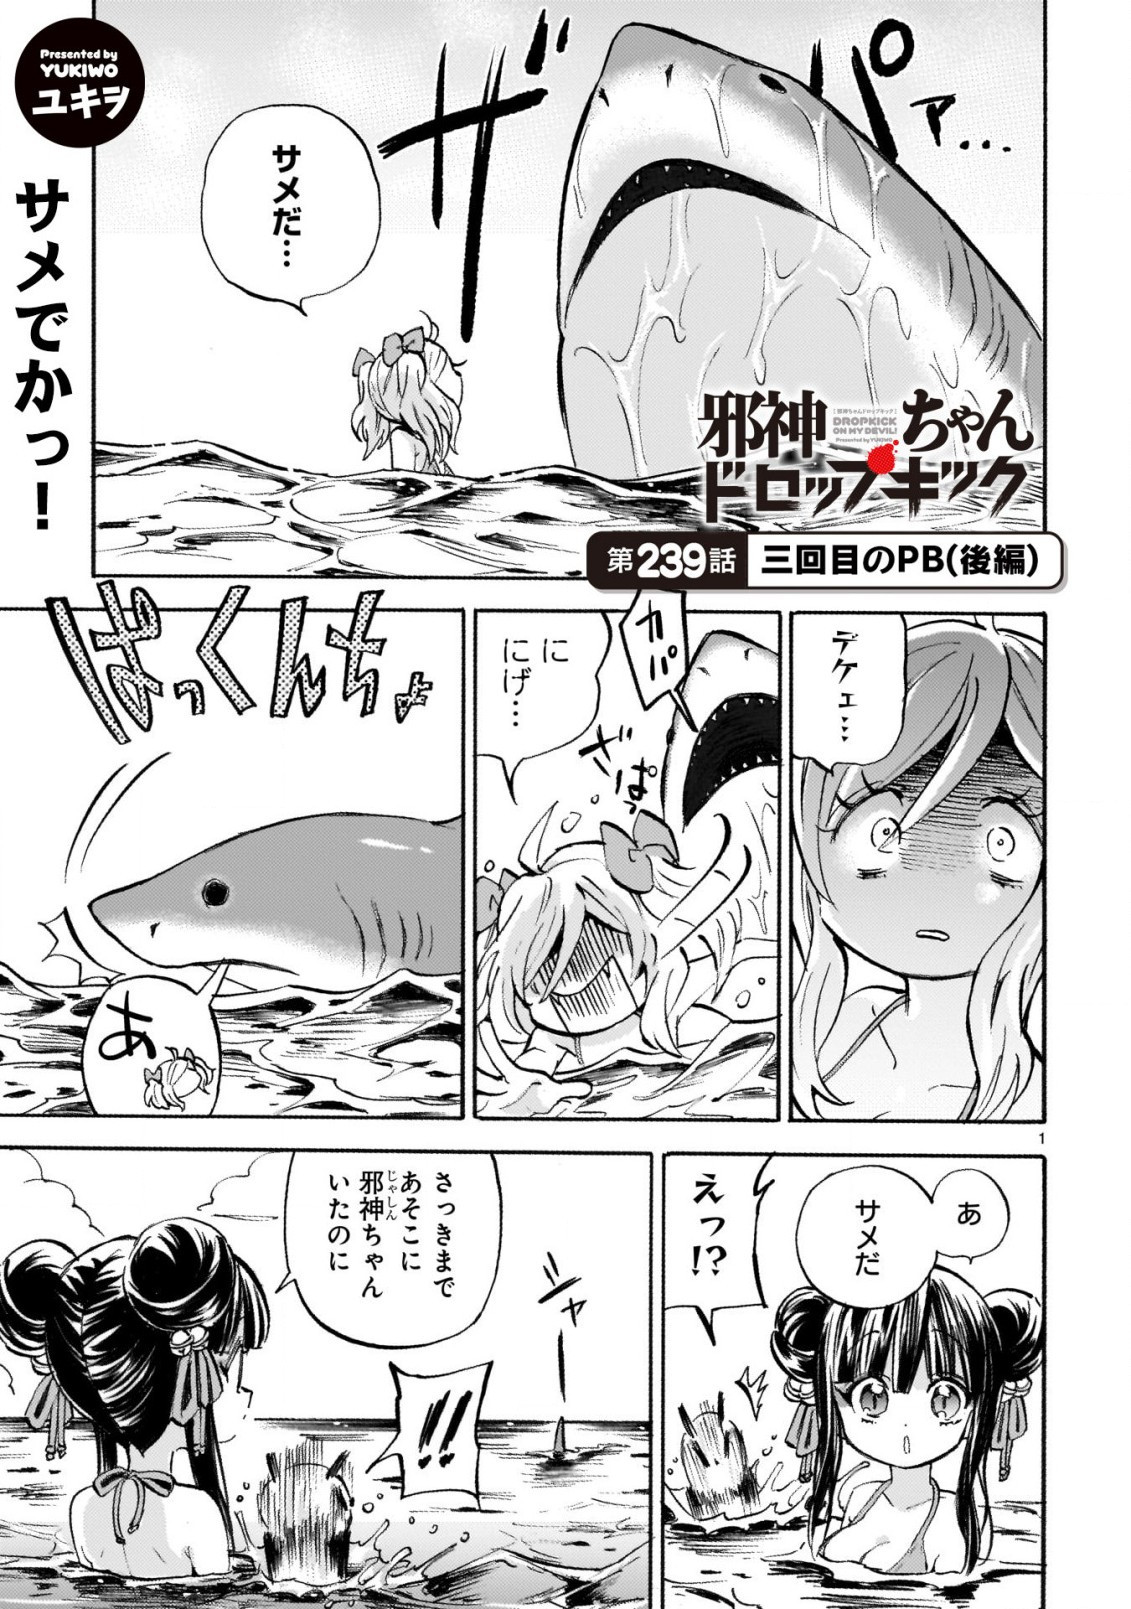 Jashin-chan Dropkick - Chapter 239-2 - Page 1